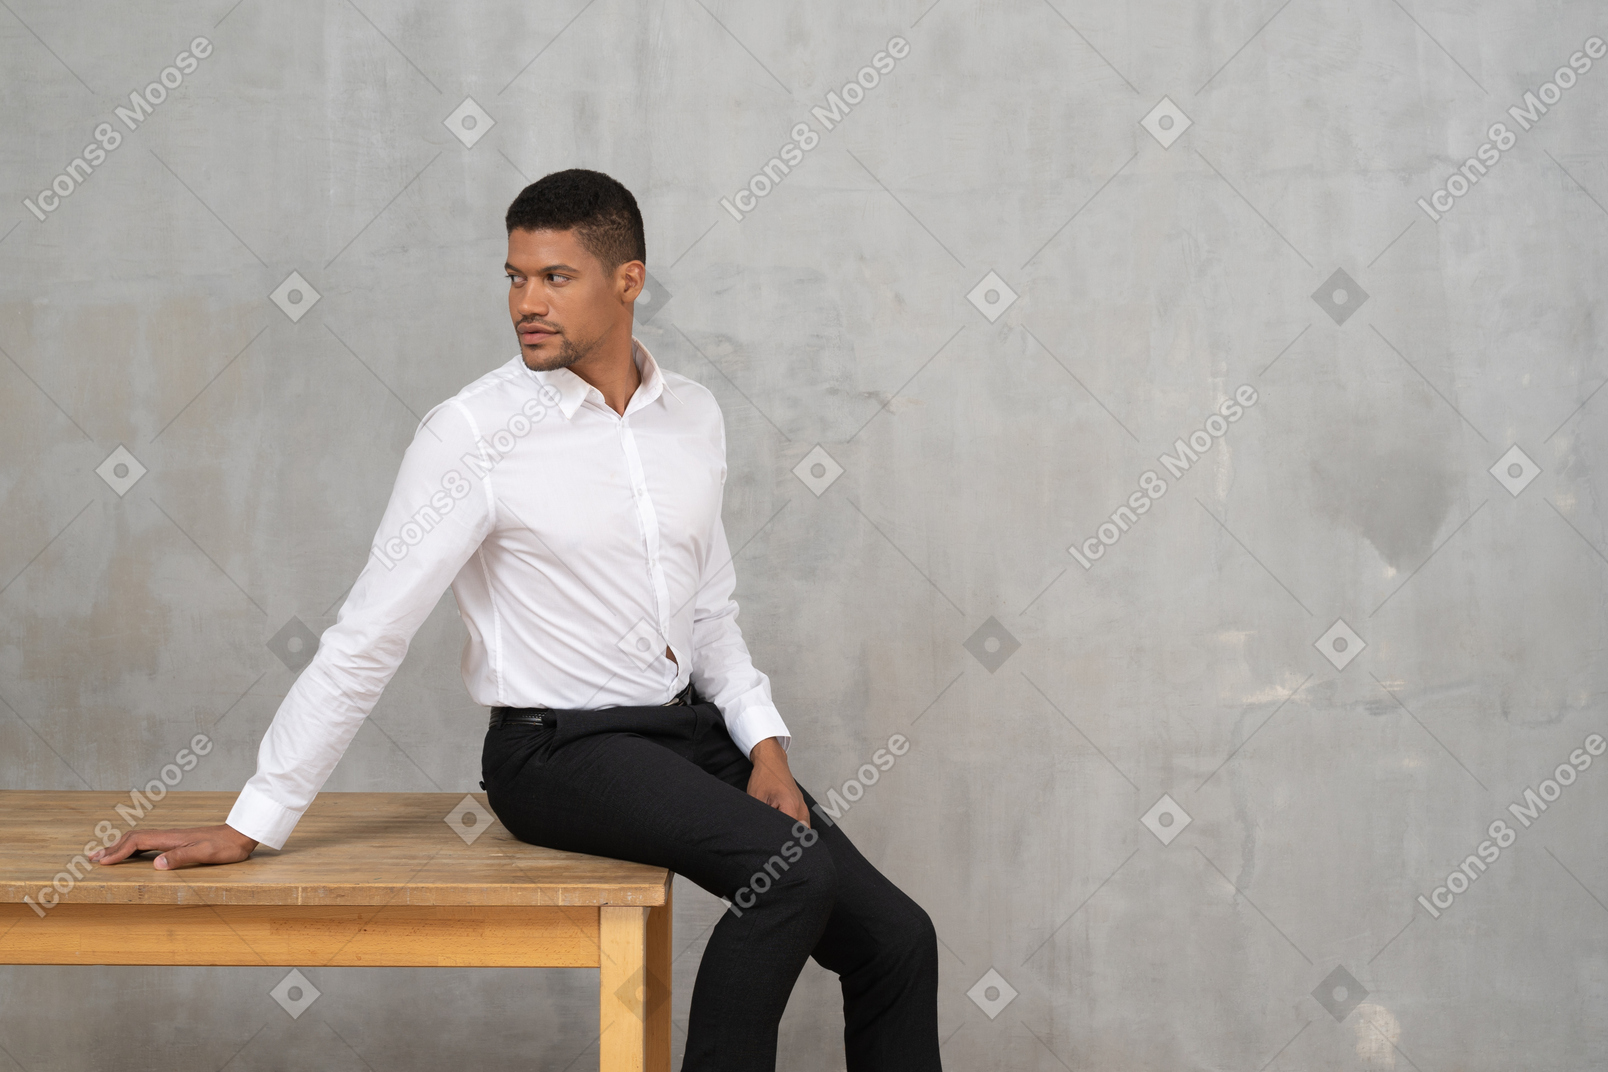 Мужчина в офисной одежде оглядывается через плечо